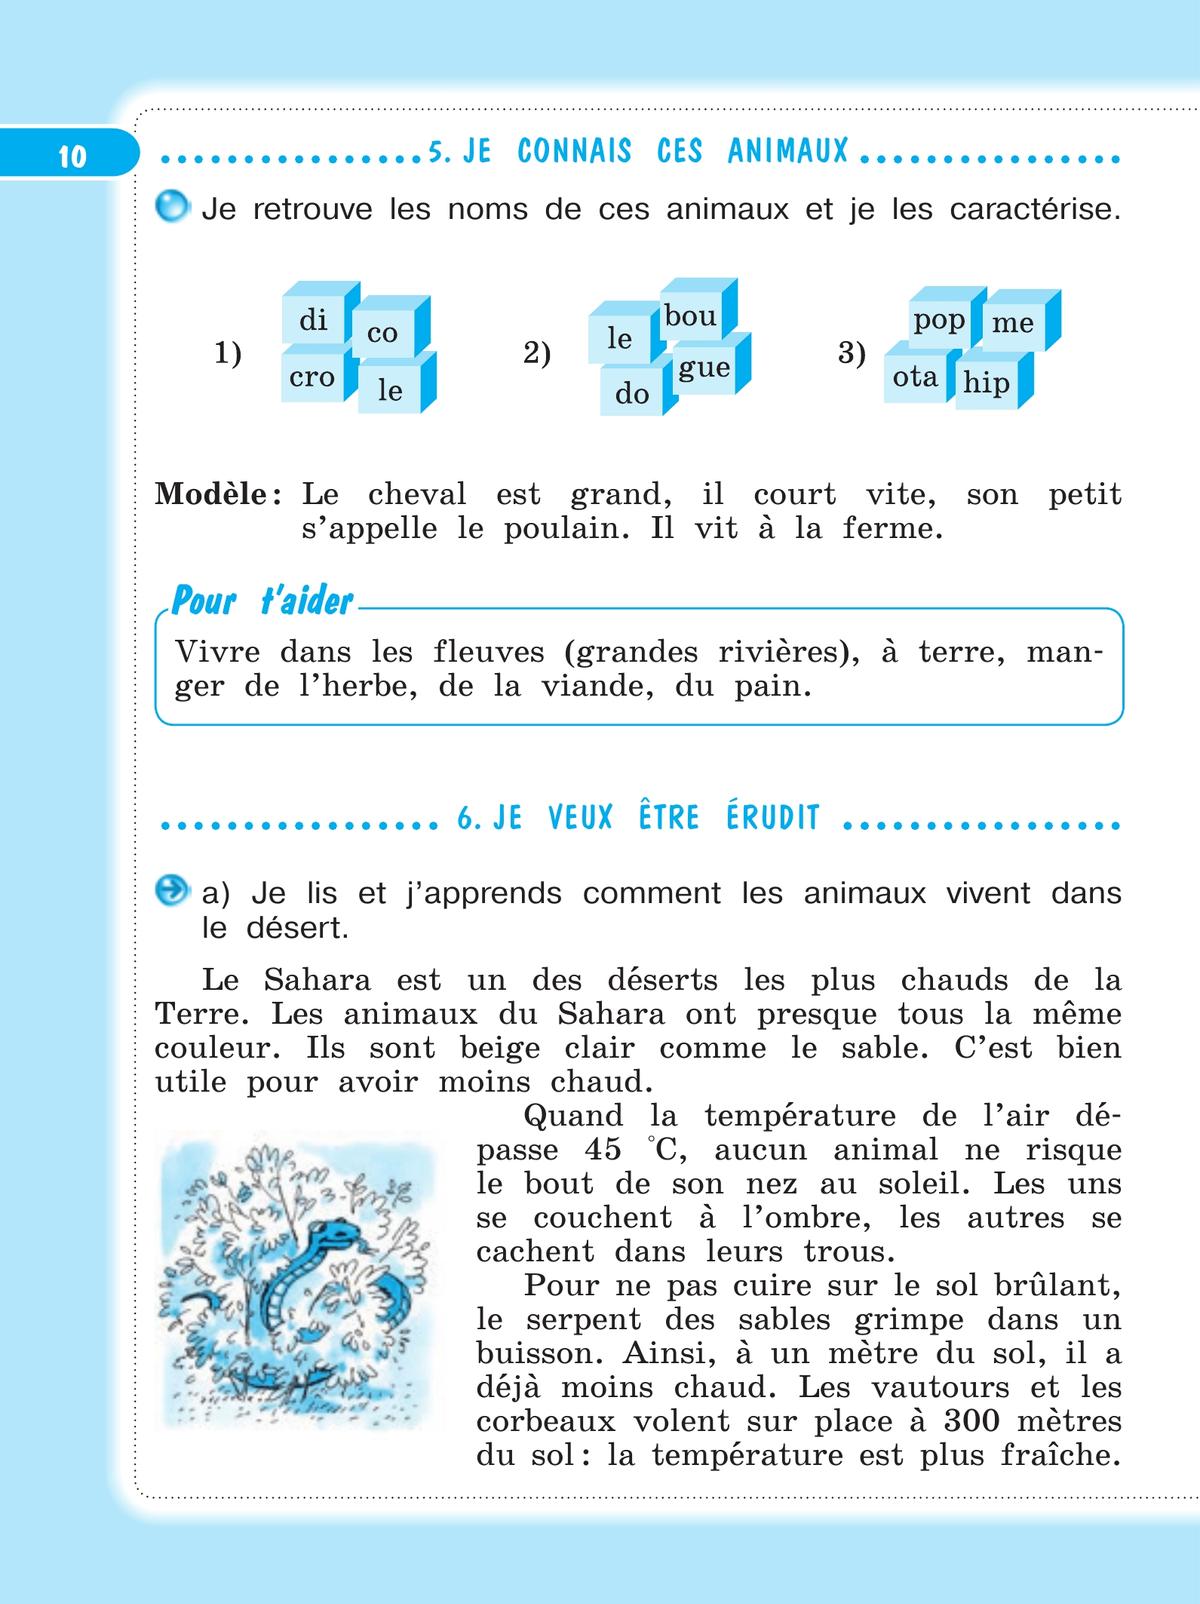 Французский язык. Рабочая тетрадь. 4 класс 2